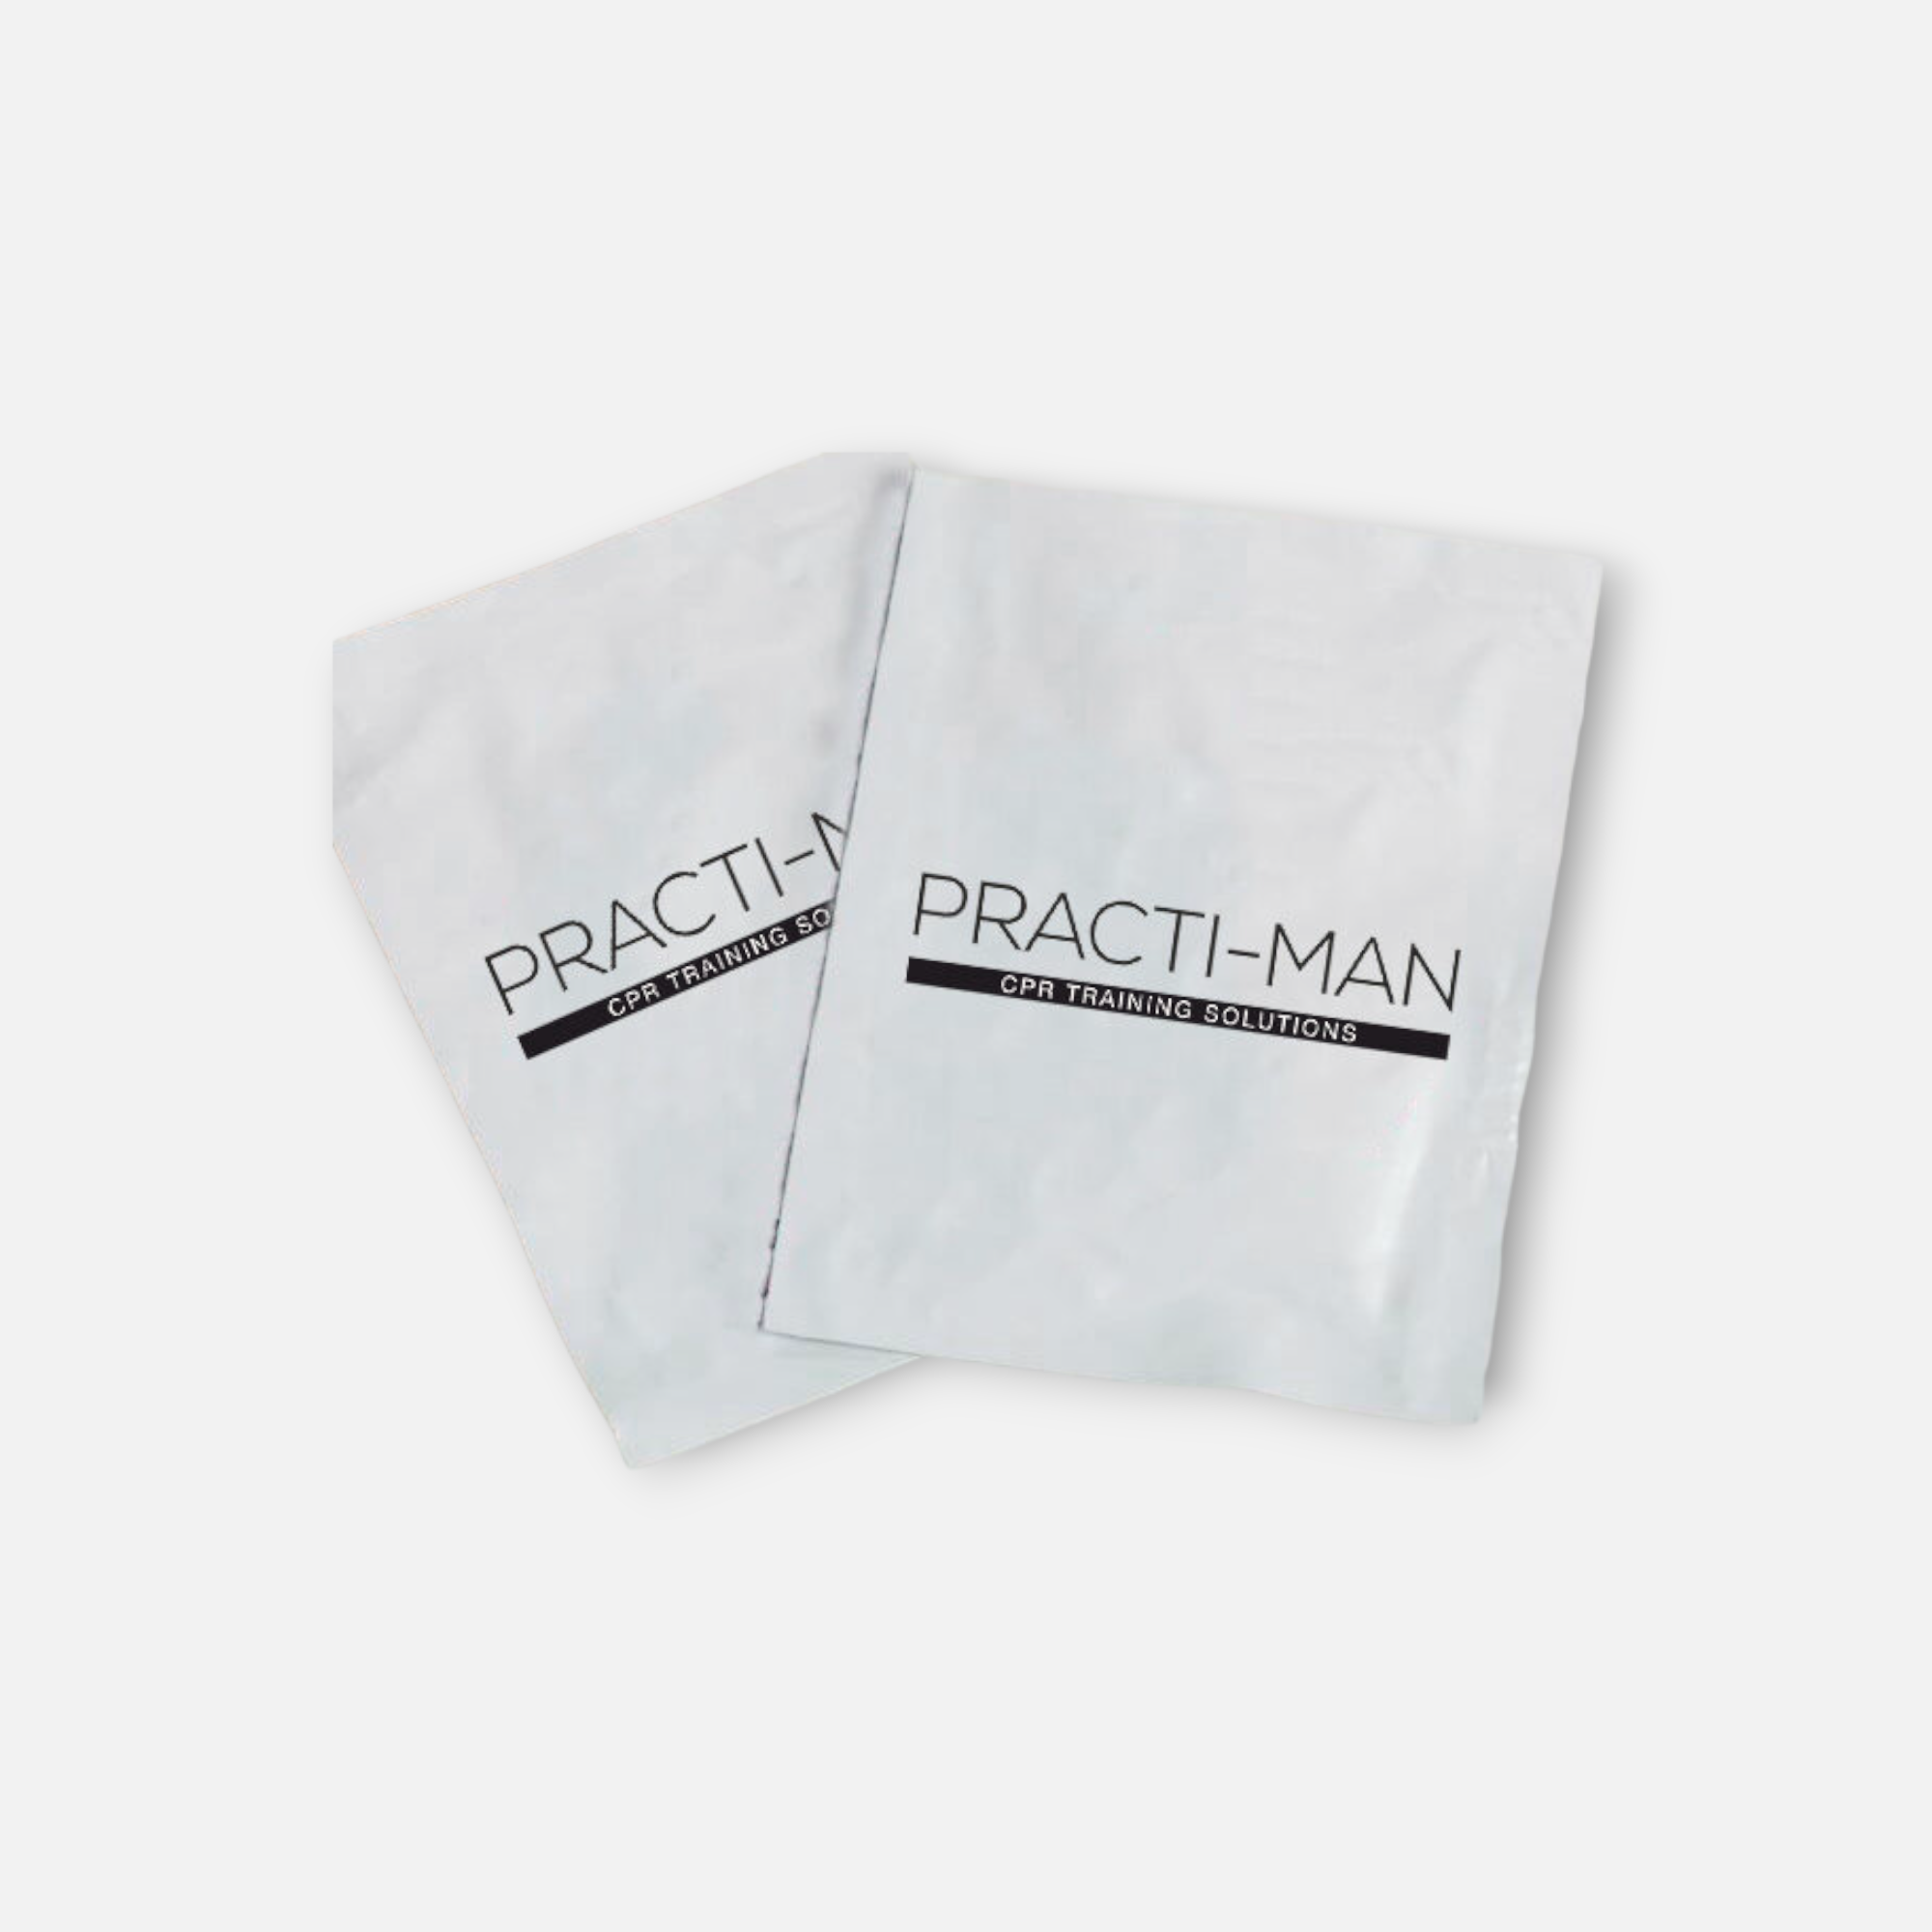 Servicepack für Practi-Man